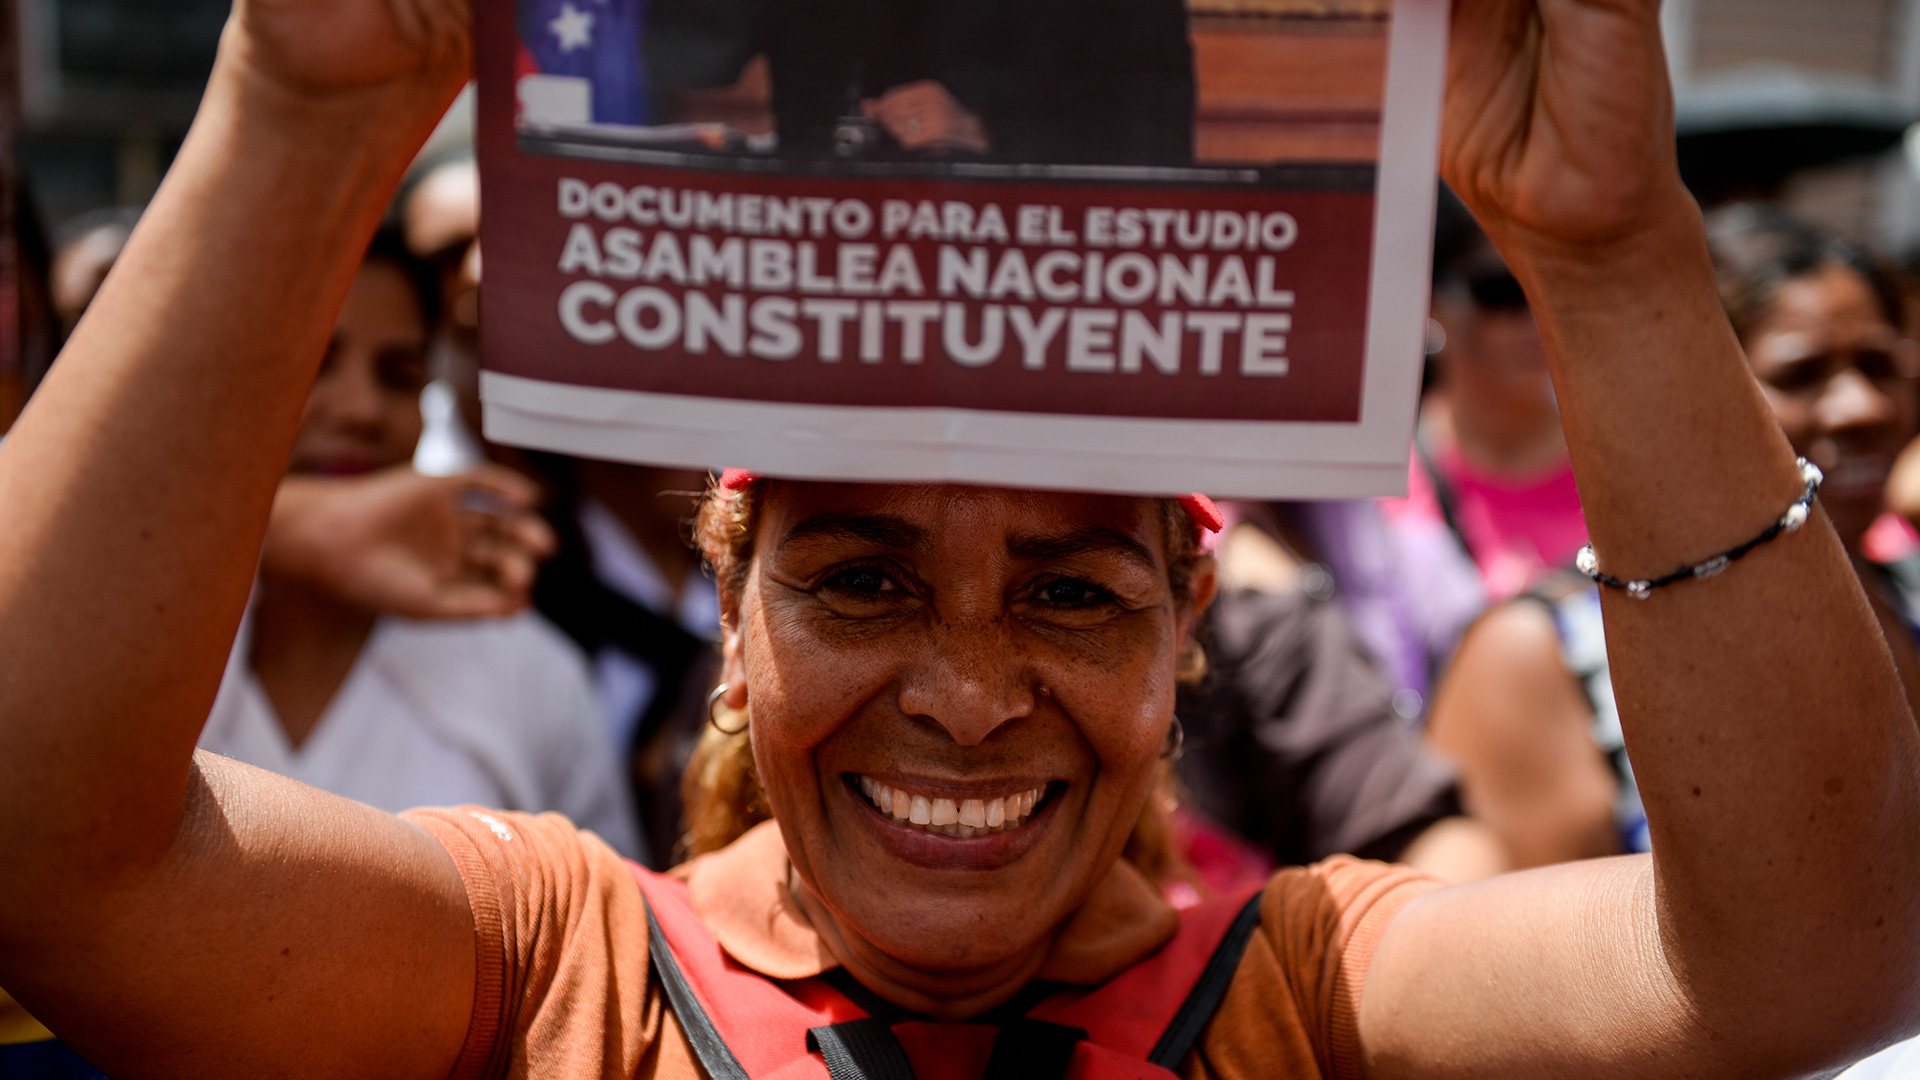 La máxima corte venezolana valida la convocatoria a Constituyente sin referendo